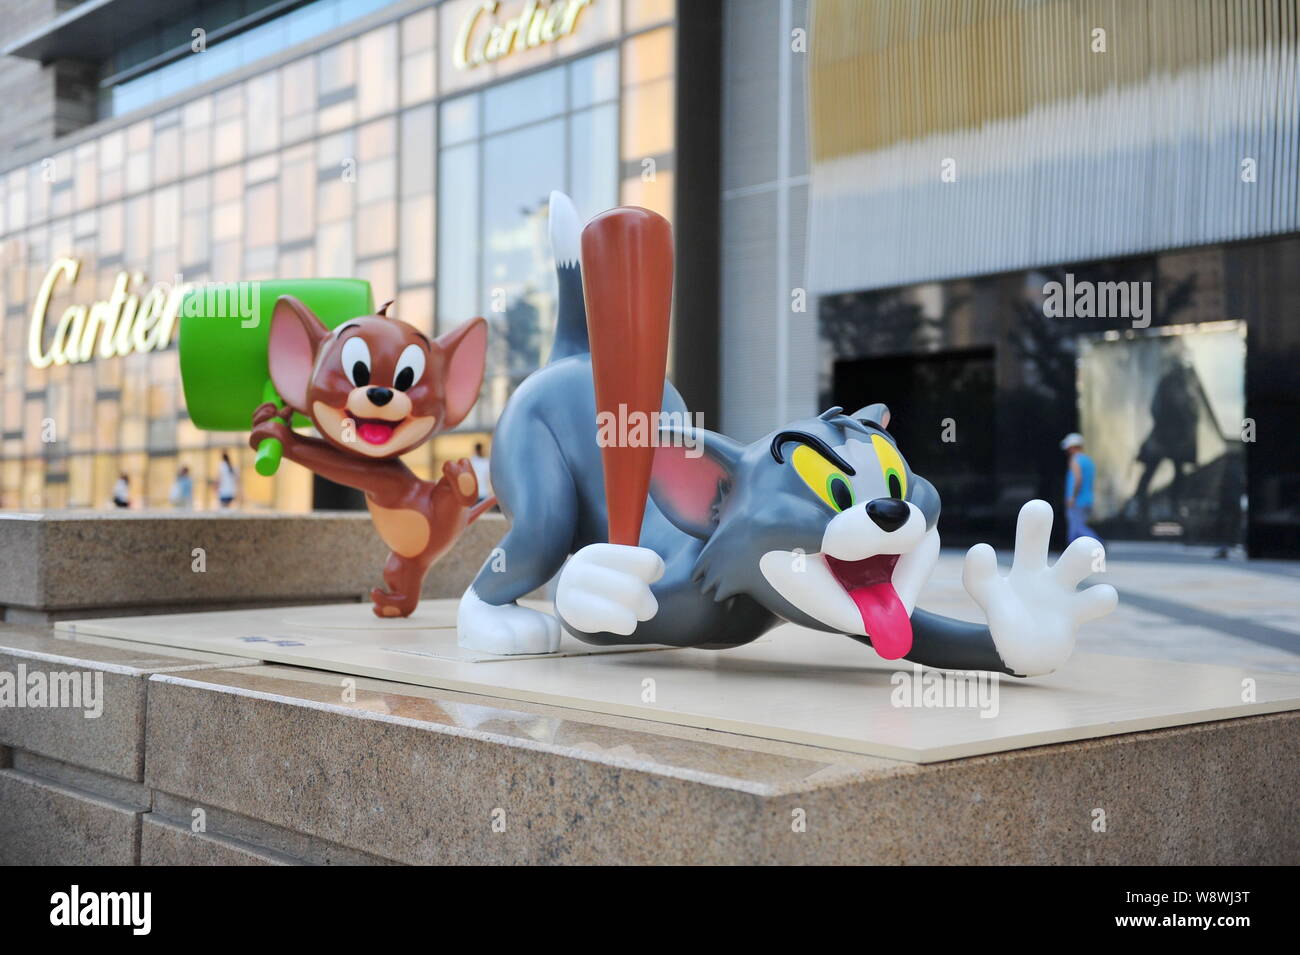 Sculture di cartoon figure Tom e Jerry sono sul display nella parte anteriore della boutique di moda di Cartier a da Mixc shopping mall in Shenyang city, né Foto Stock